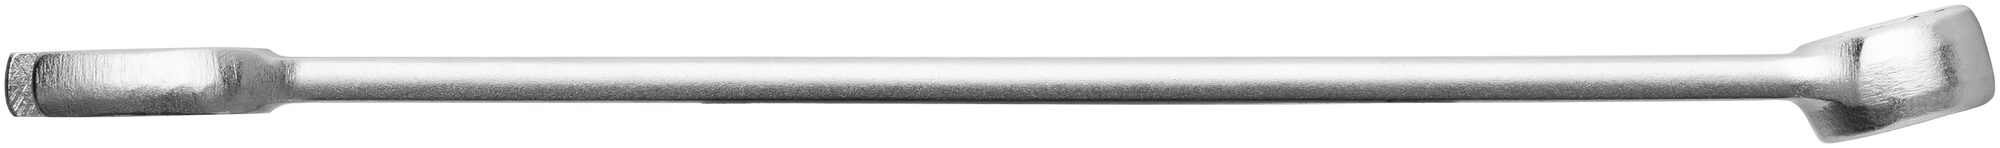 HAZET Ring-Maulschlüssel 600N-7 · Außen Doppel-Sechskant-Tractionsprofil · 7 mm